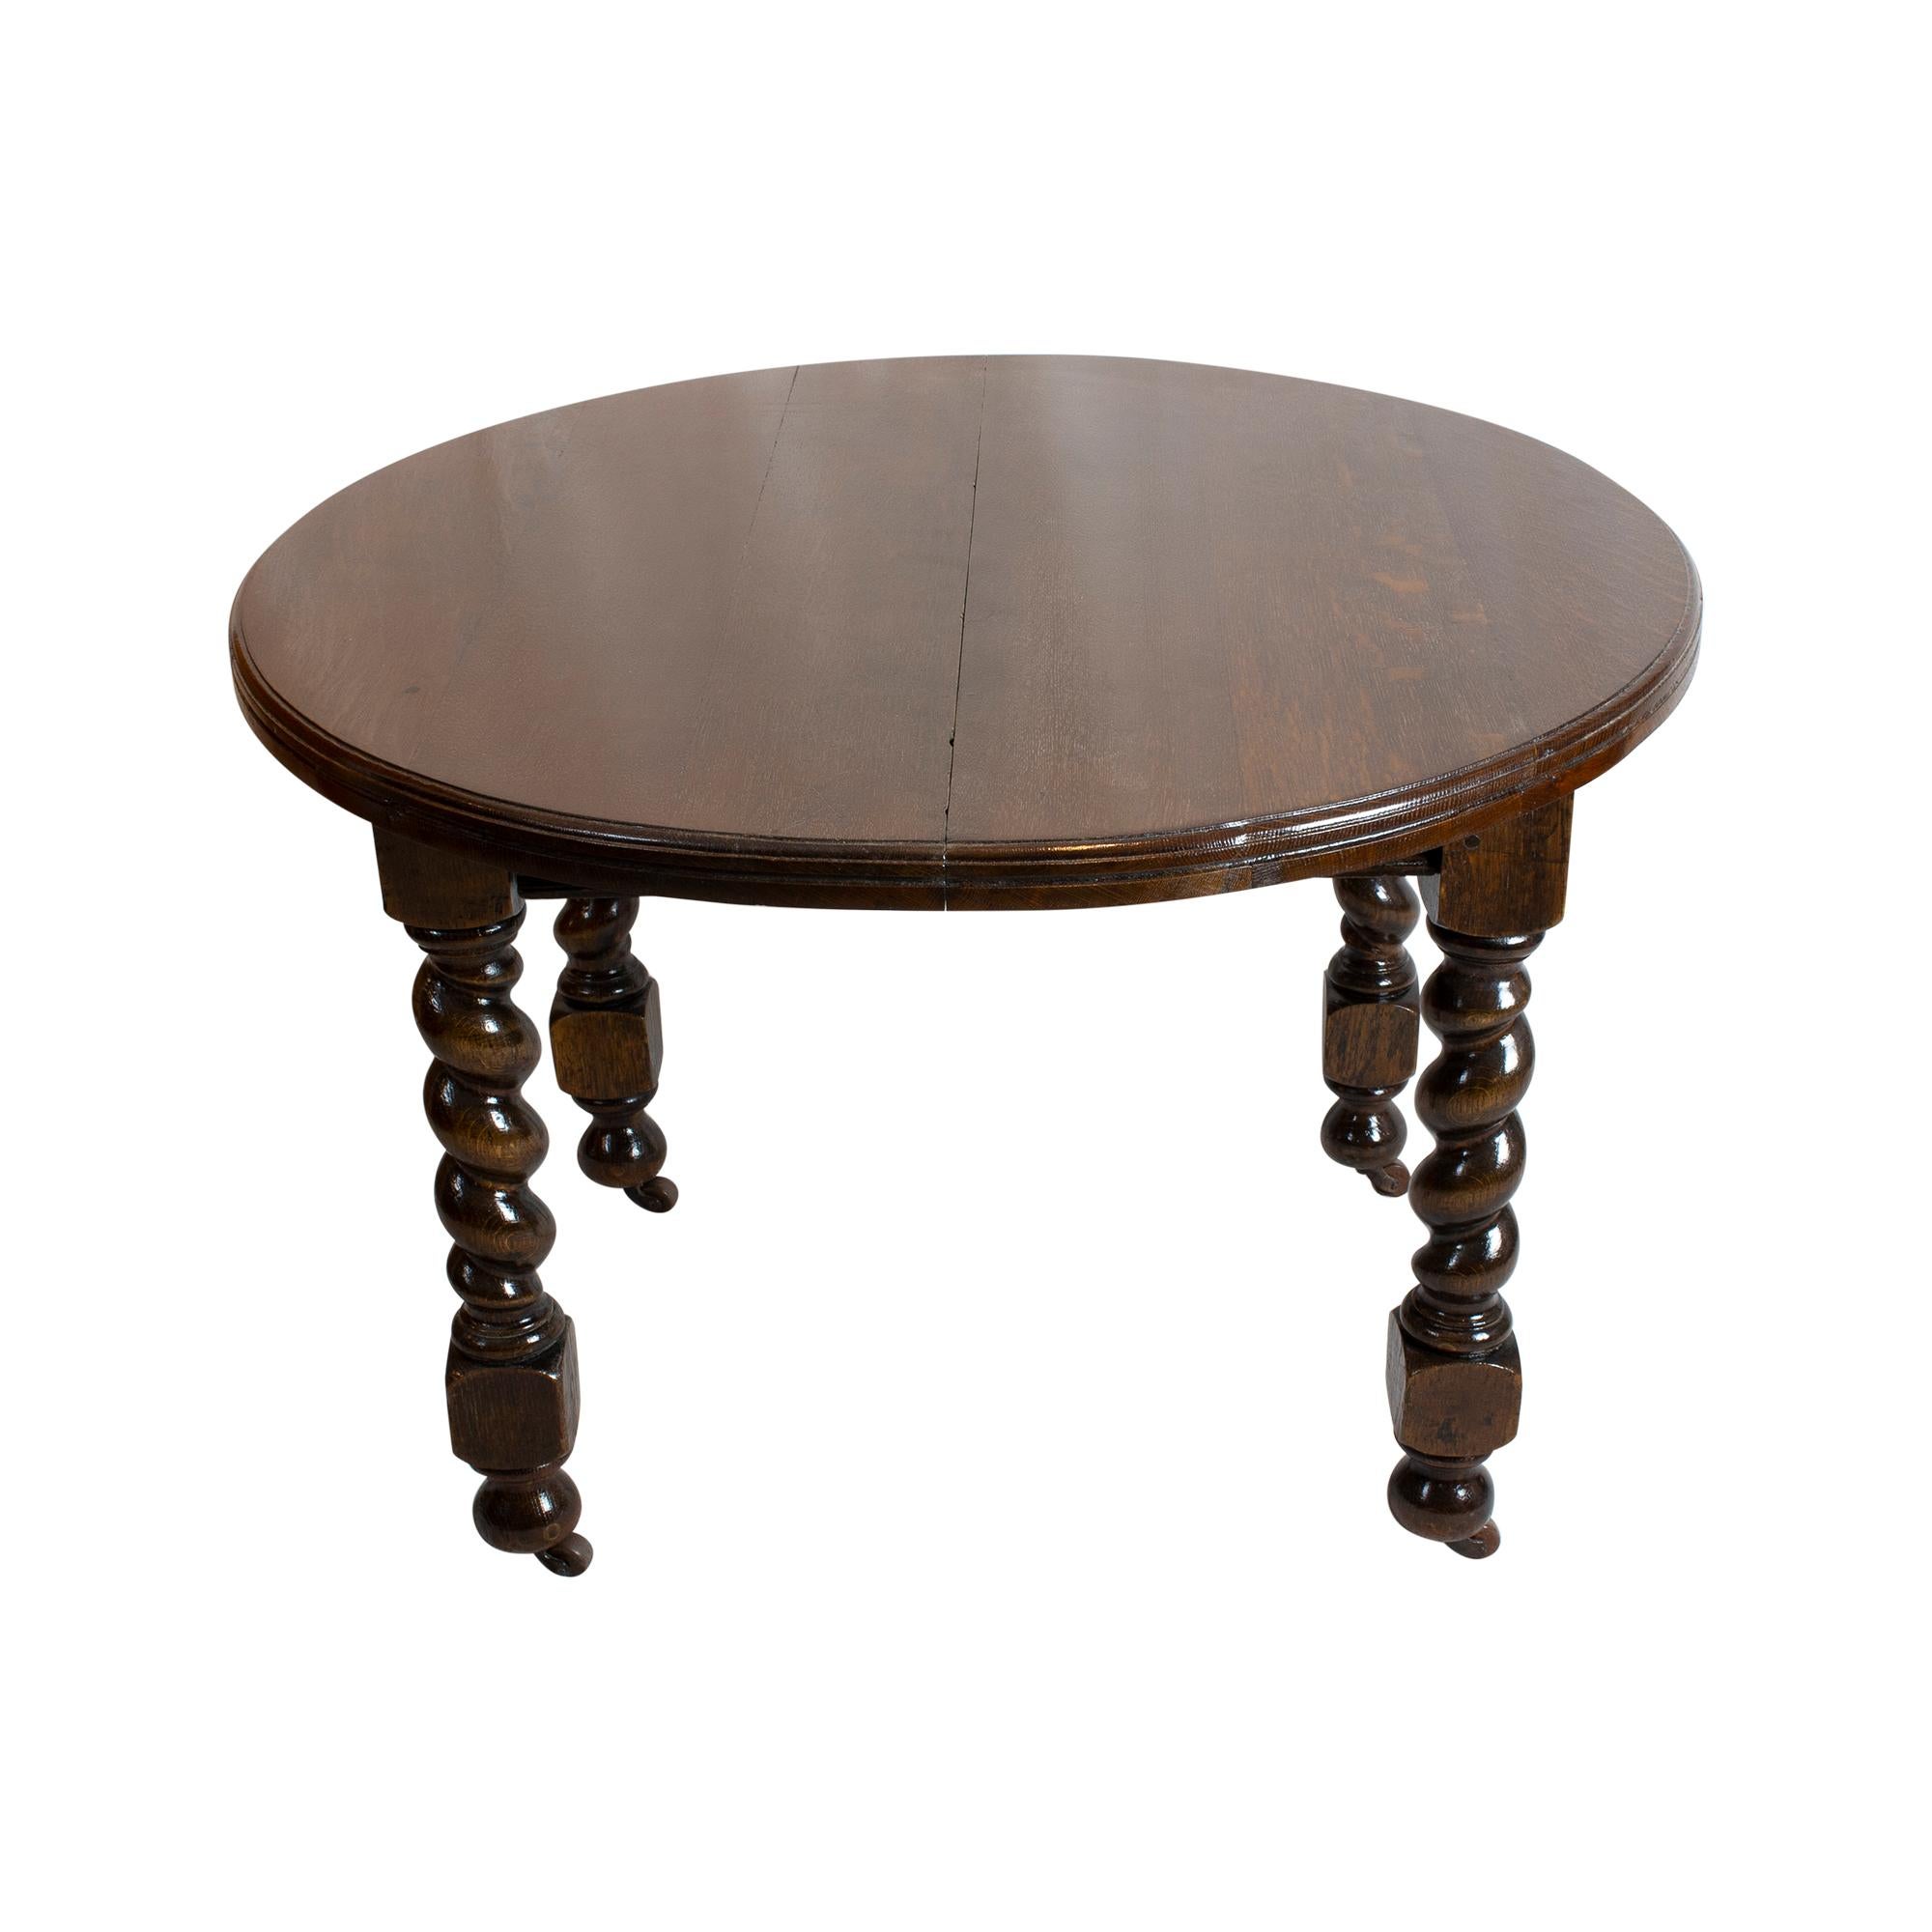 La table provient d'Angleterre vers 1880. La table était en bois de chêne. Une manivelle, fournie avec la table, permet de l'écarter et d'insérer un plateau qui l'agrandit de 43 cm. La table repose sur les roulettes d'origine. La table est en bon